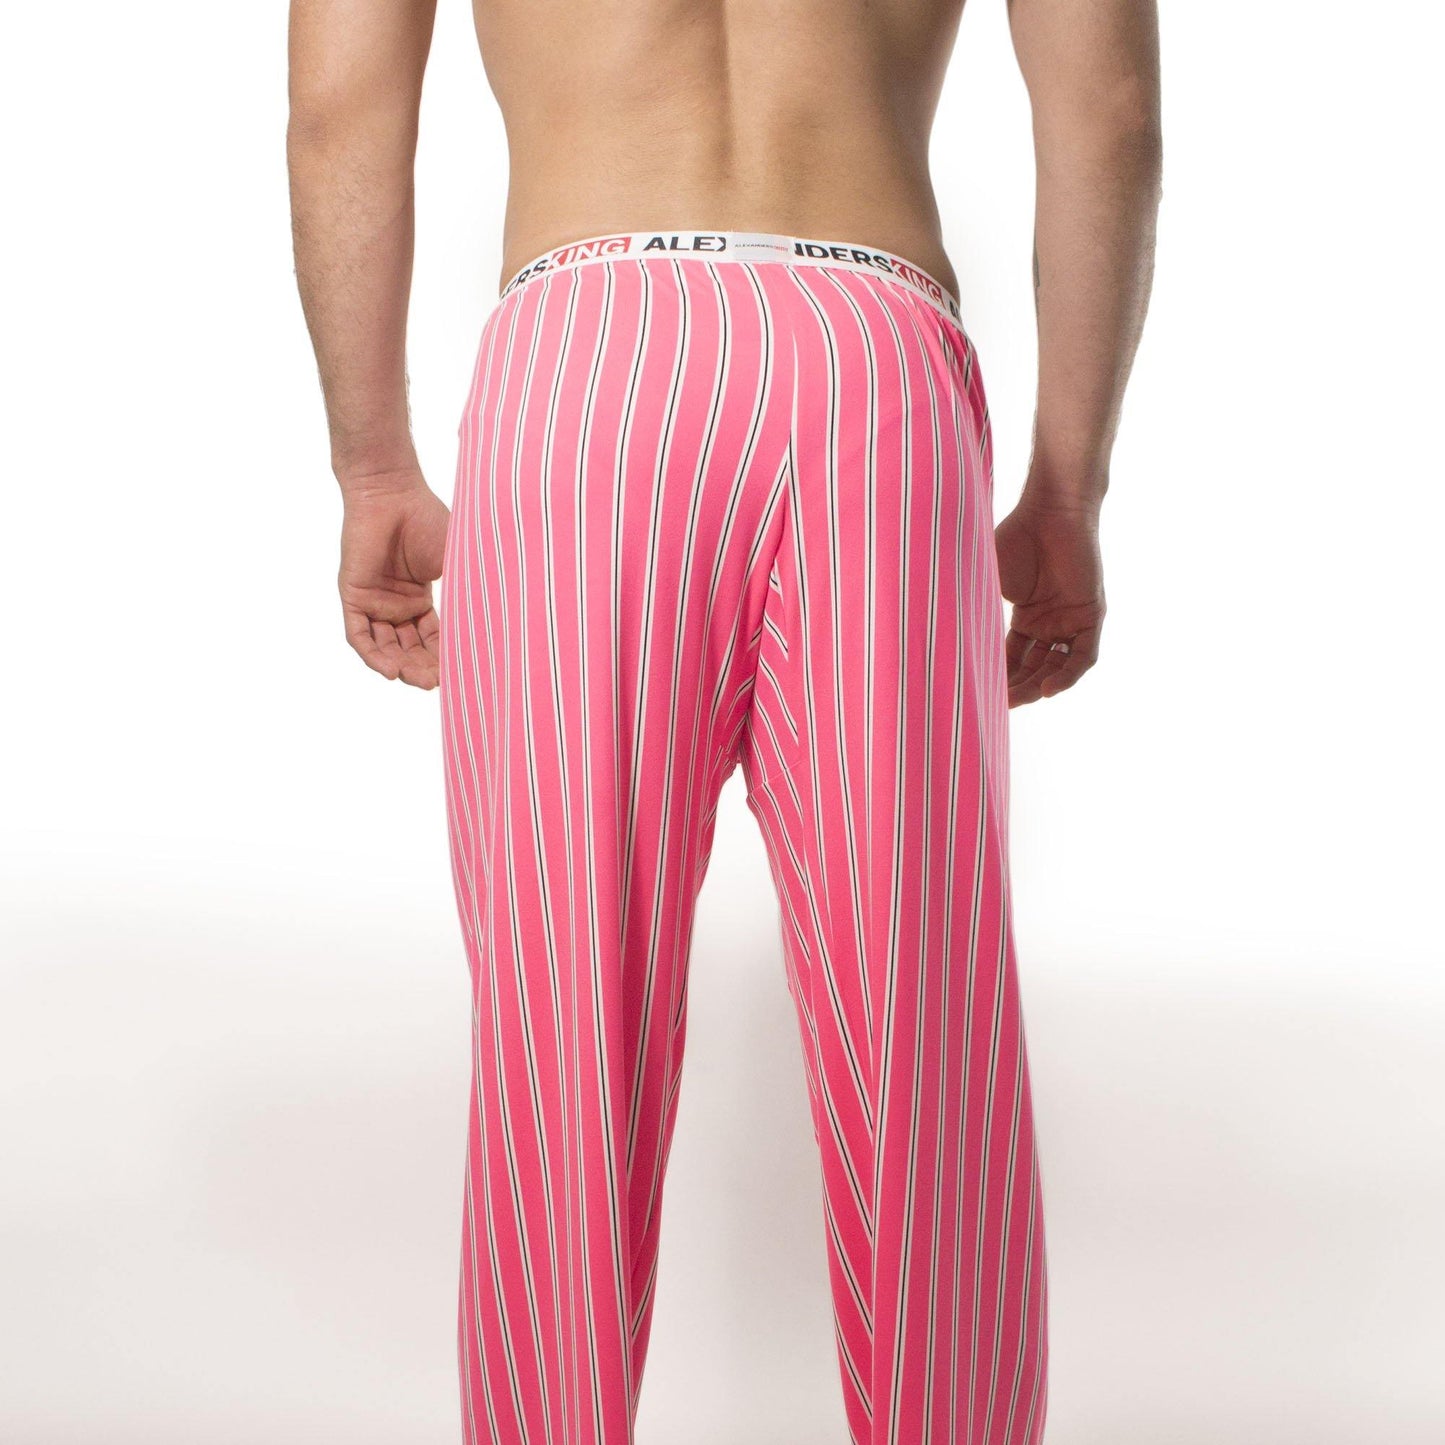 PP0006 - Pantalón Pijama Bonet - AlexandersKing Underwear